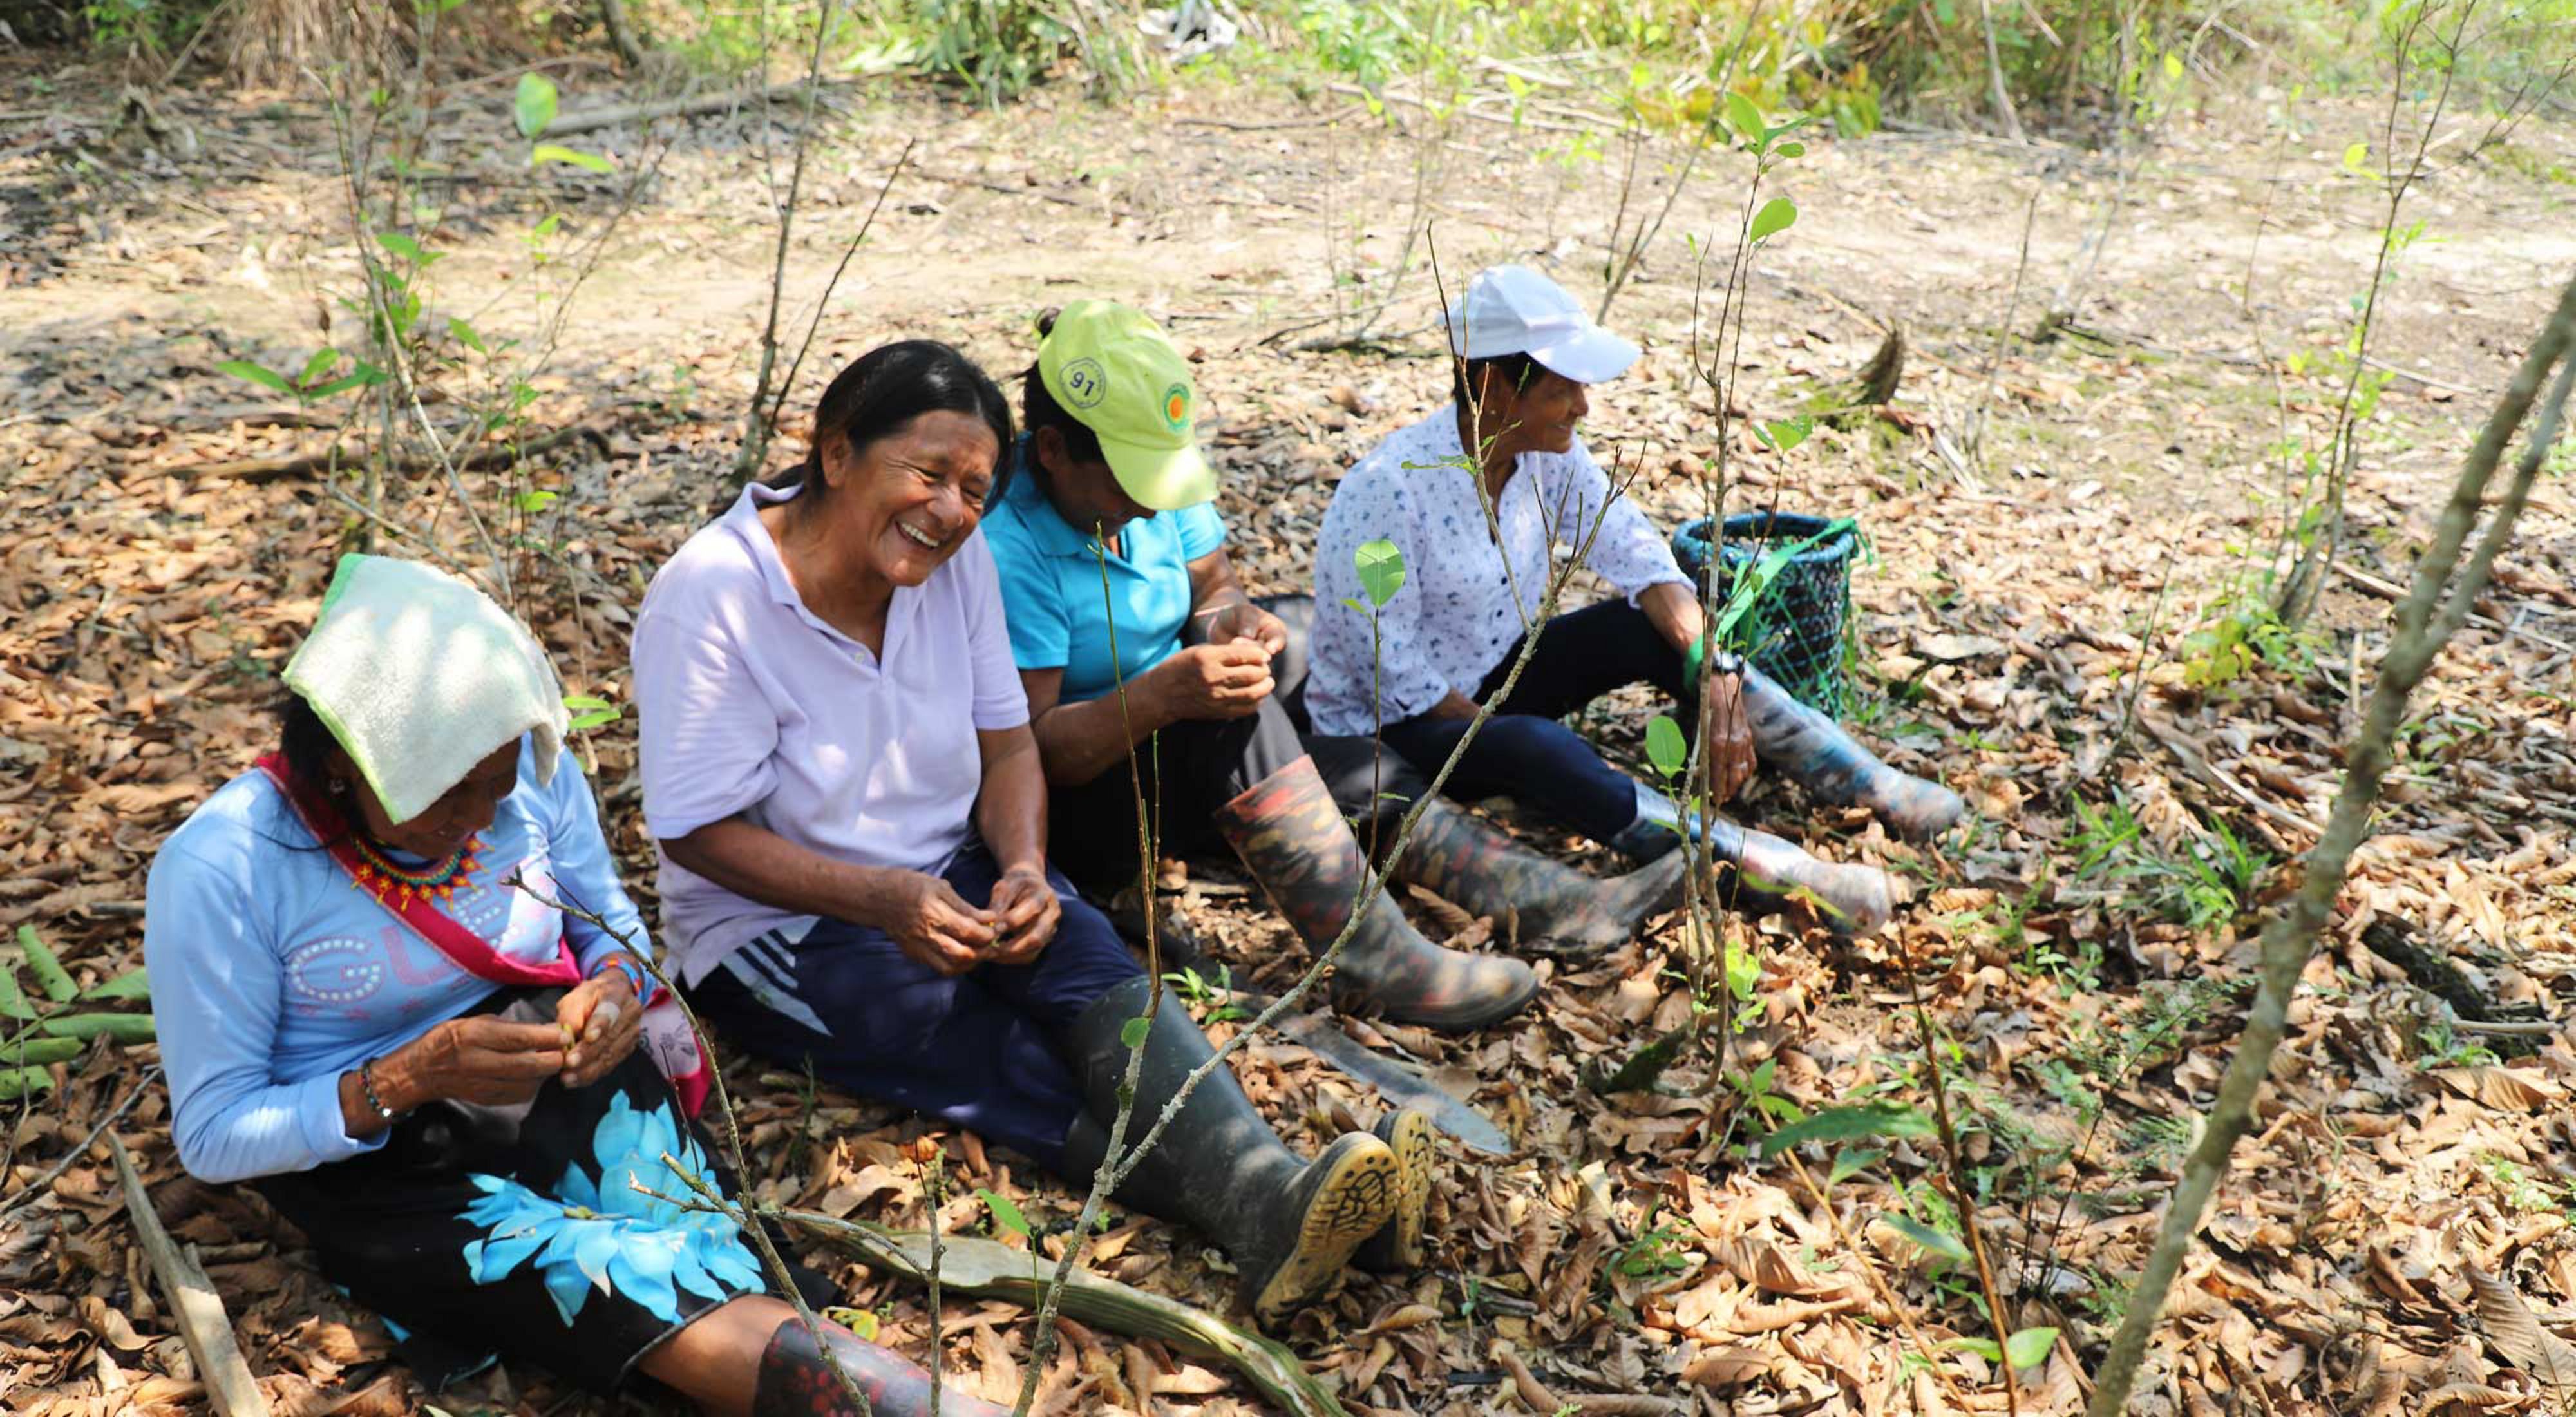 Mujeres detrás de la conservación en América Latina  